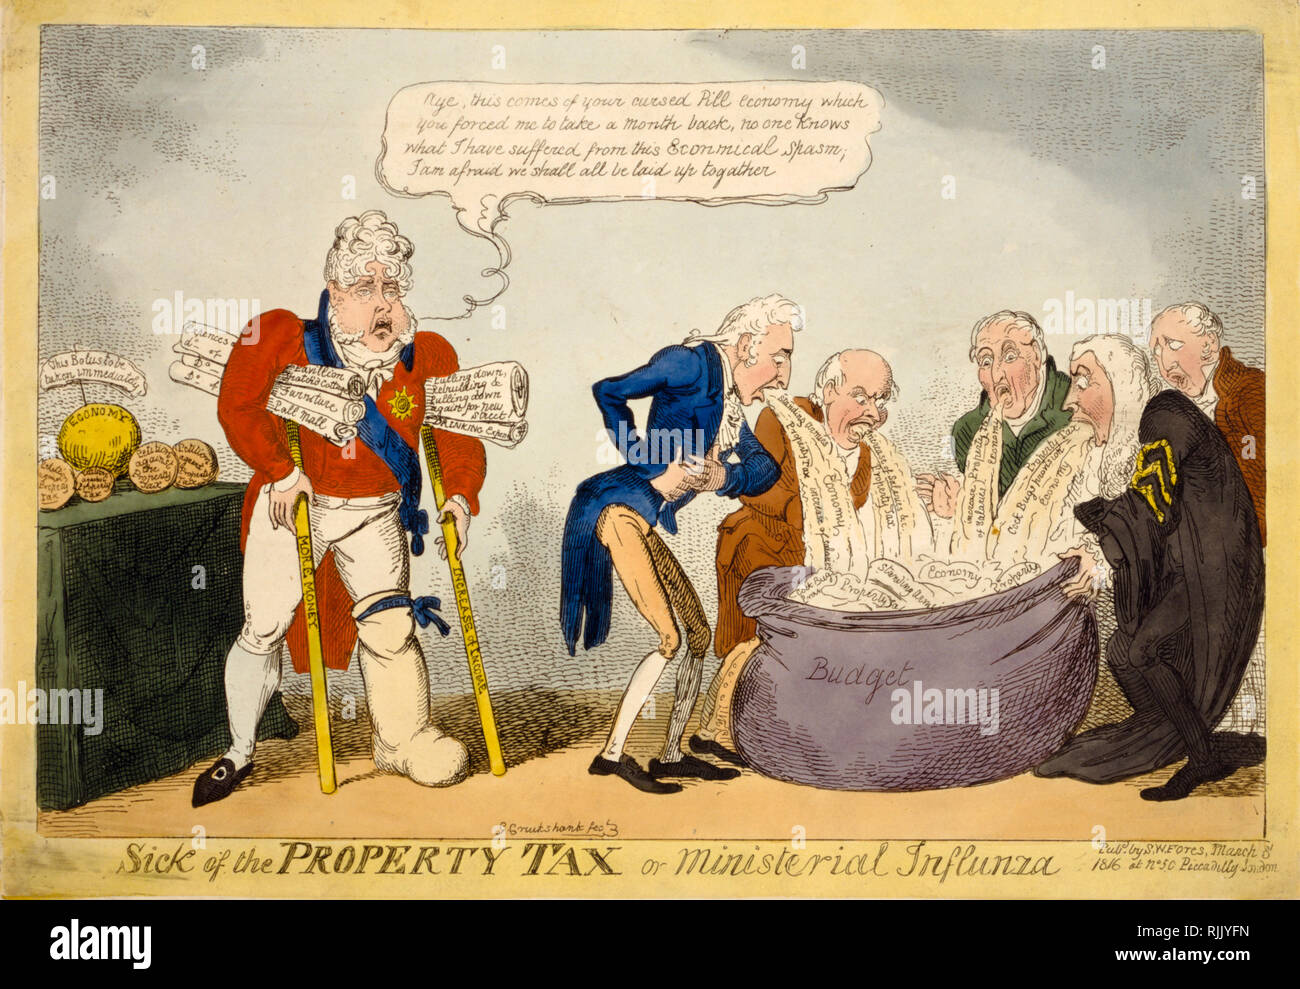 La Caricature politique - George Cruikshank 1816 - 'Sick de l'impôt foncier ou influnza ministérielle (sic)" - Politique Banque D'Images